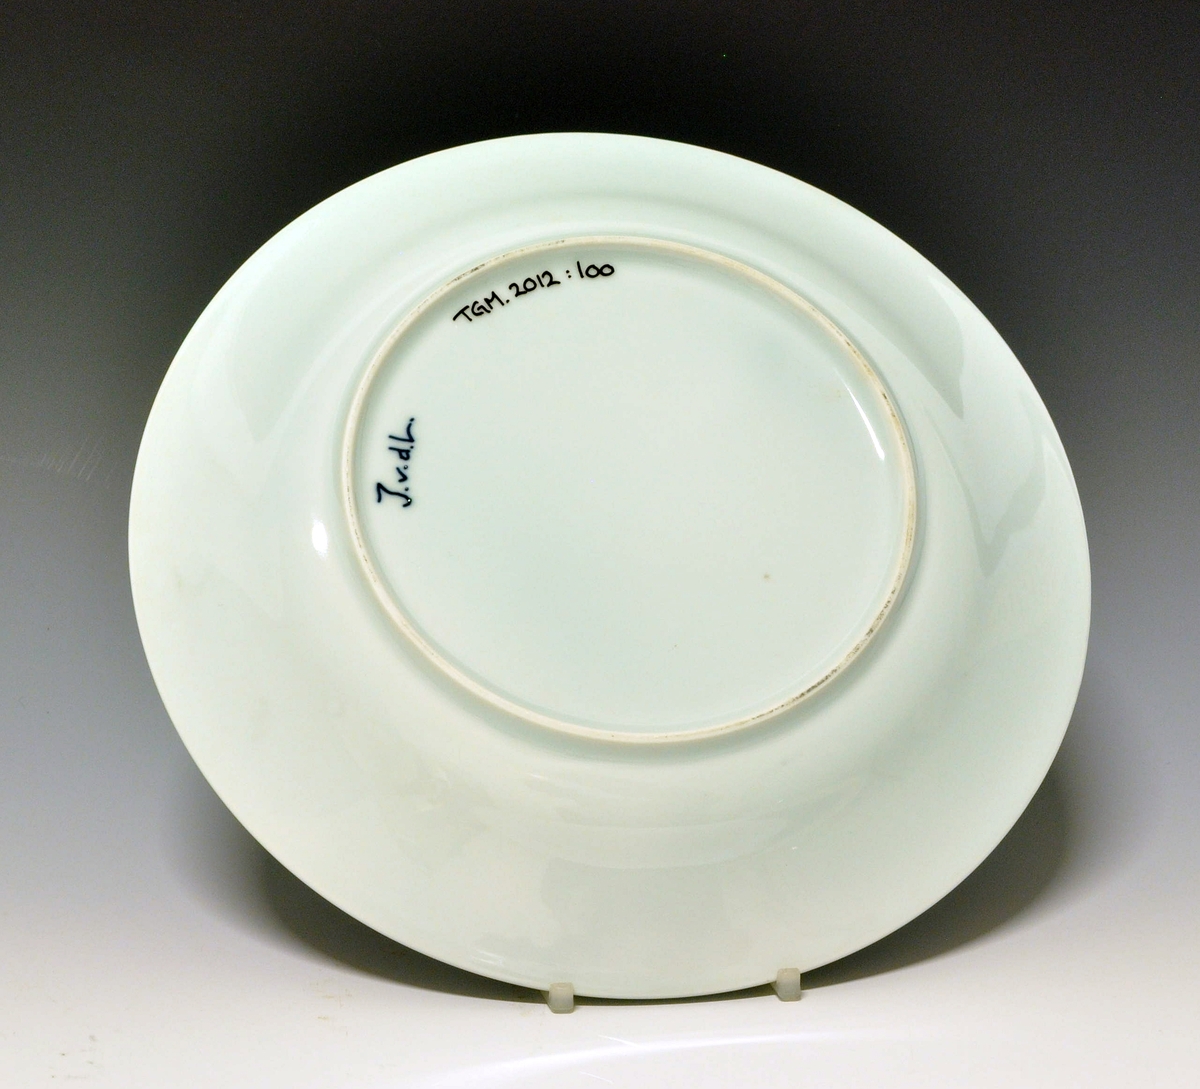 Flat tallerken i porselen, med glatt kant.
Dekor: Stråmønsterinspirert dekor av Jens von der Lippe
Modell: 2590, Leif Enger